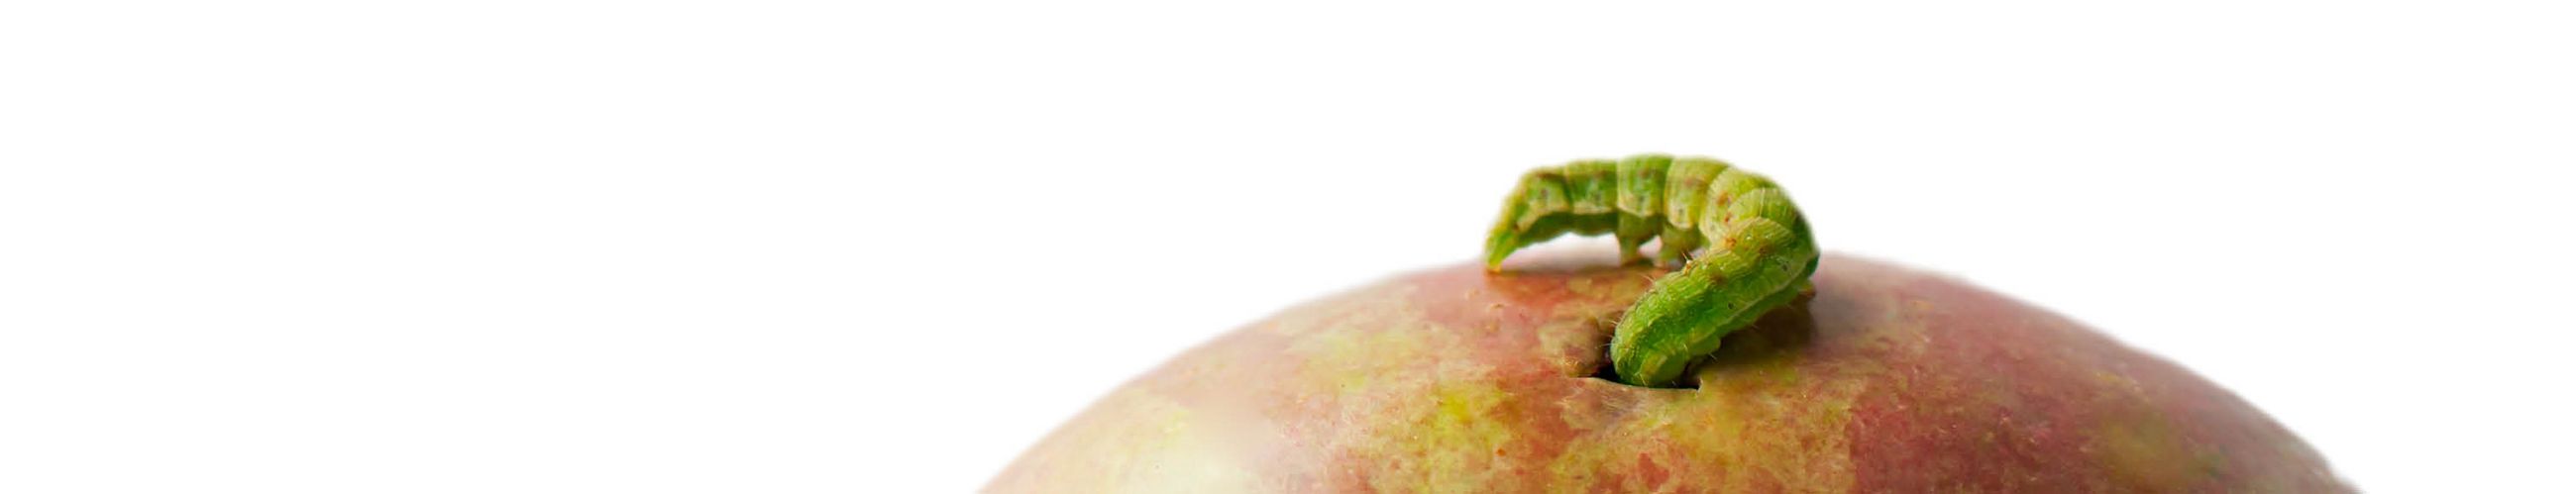 Es ist eine Nahaufnahme einer grünen Raupe zu sehen, die sich in einen Apfel frisst.